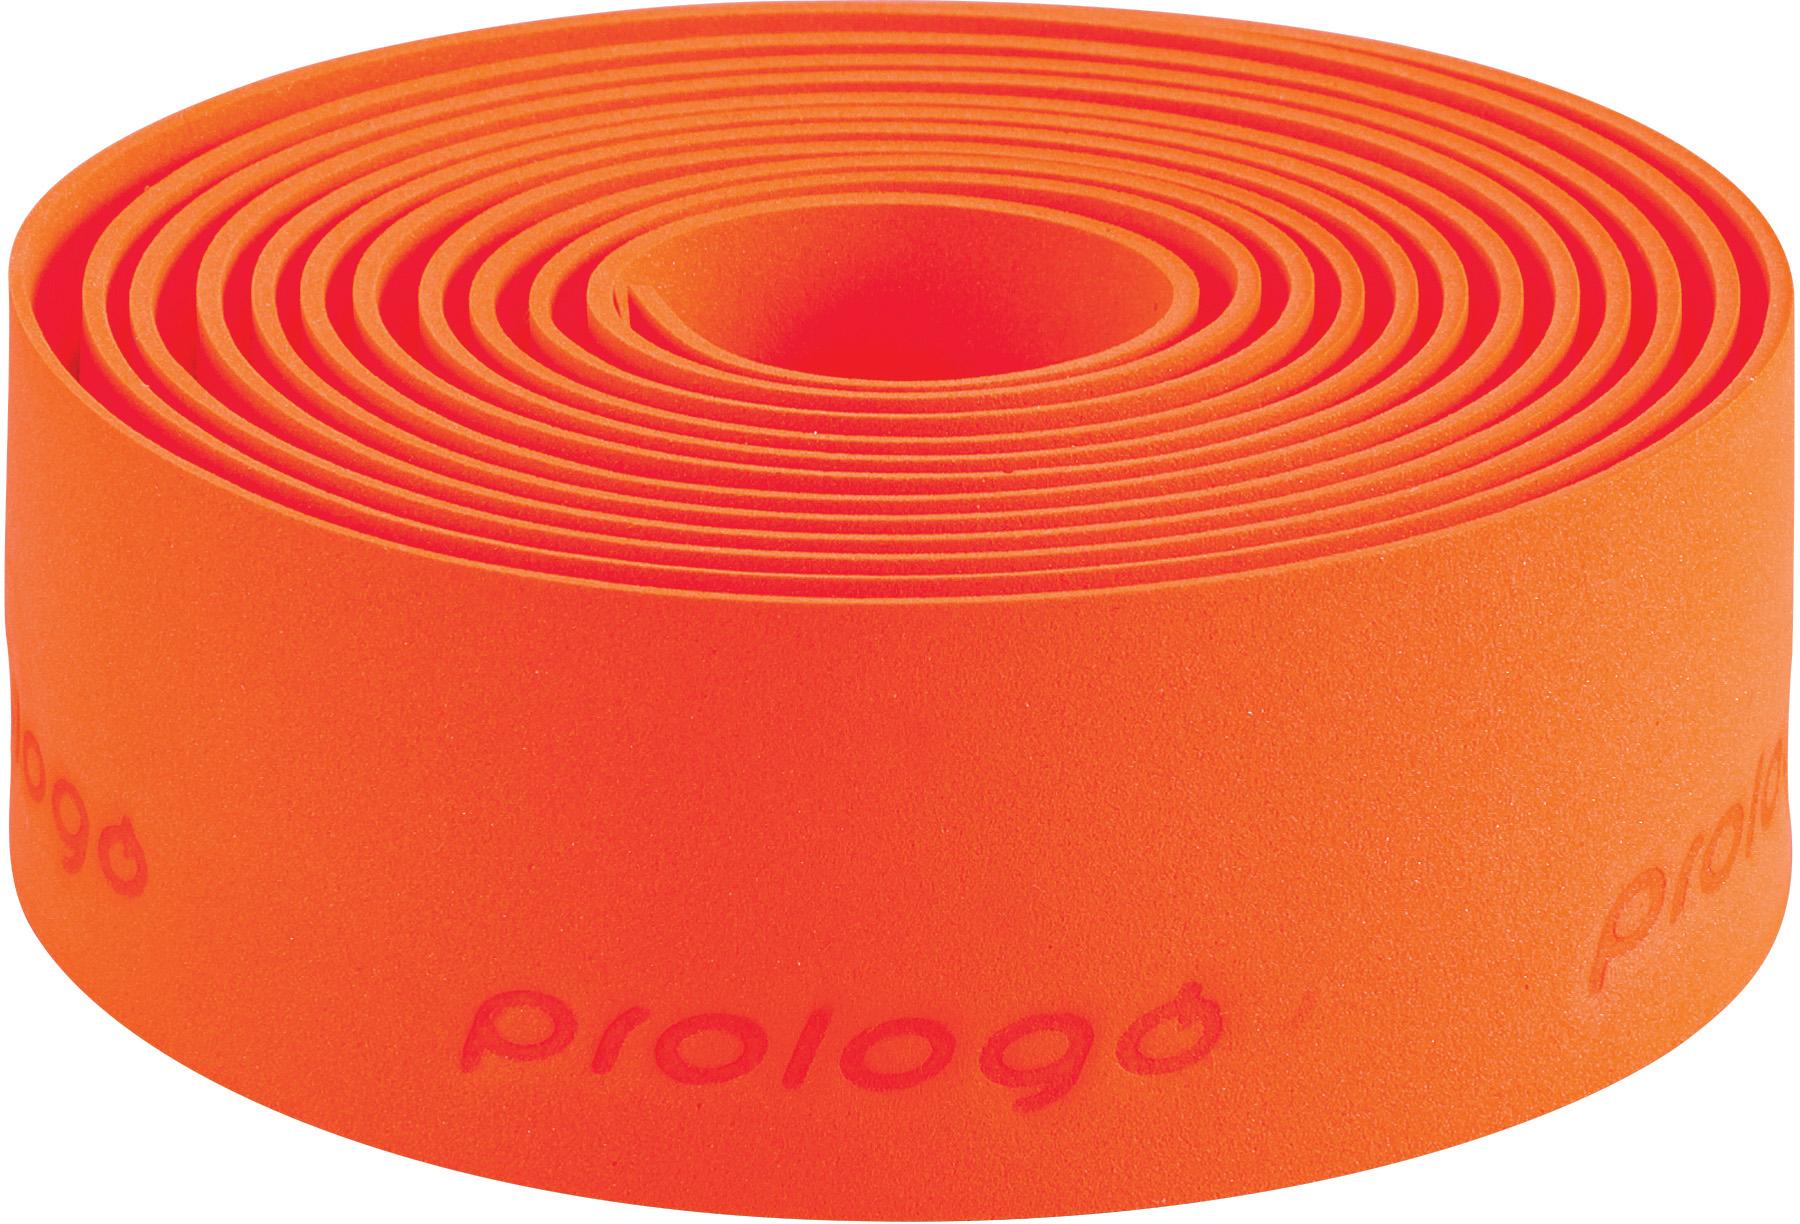 Prologo Plaintouch Bar Tape  Orange